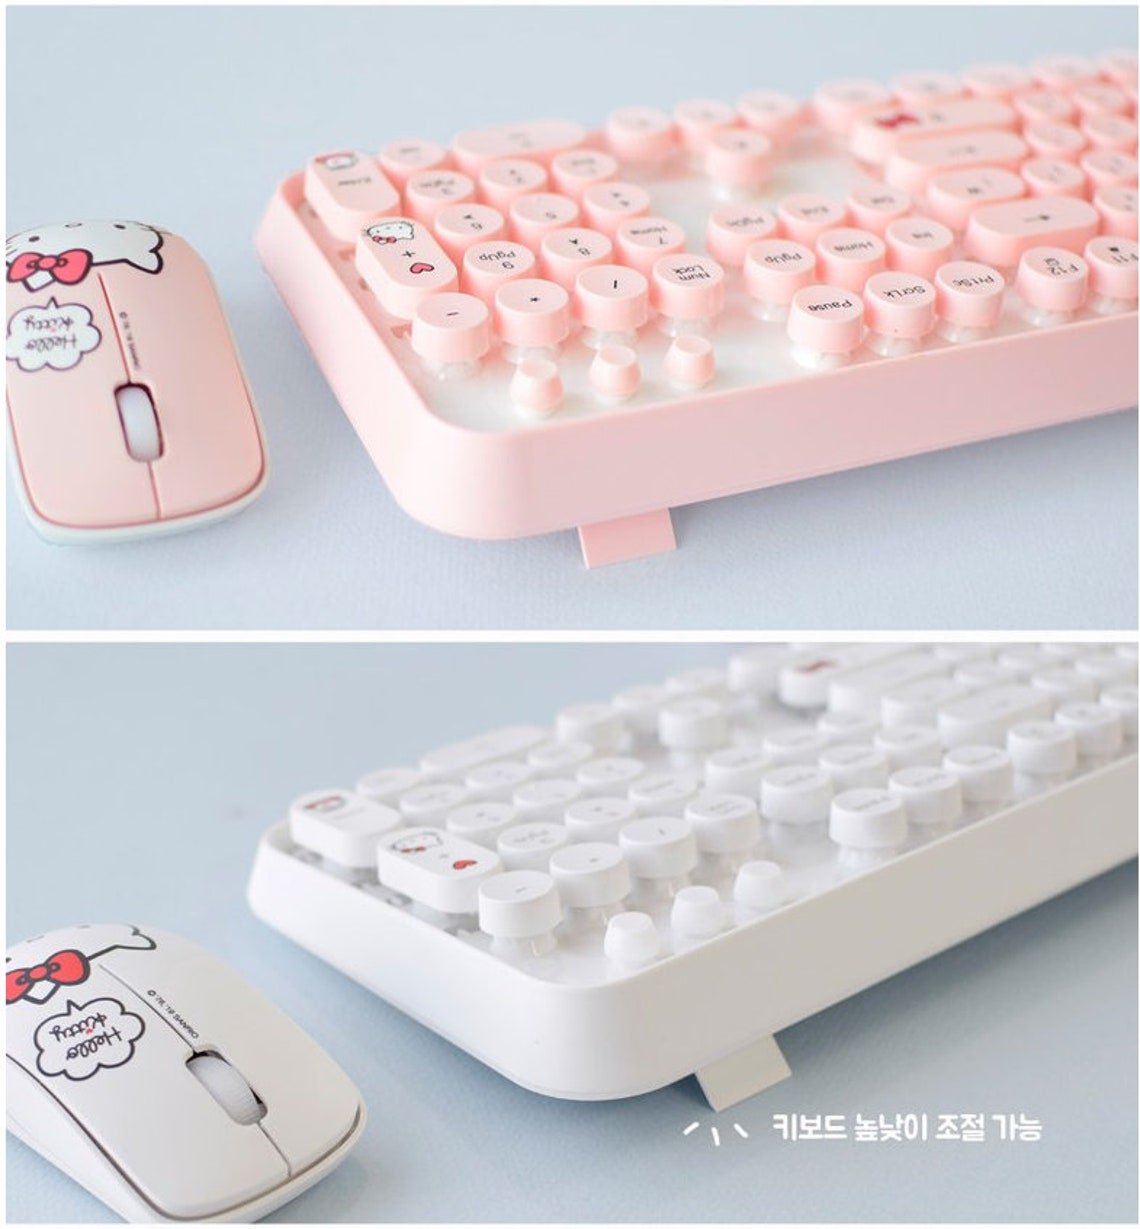 Hello Kitty Sanrio Wireless retro keyboard & Mouse Sets